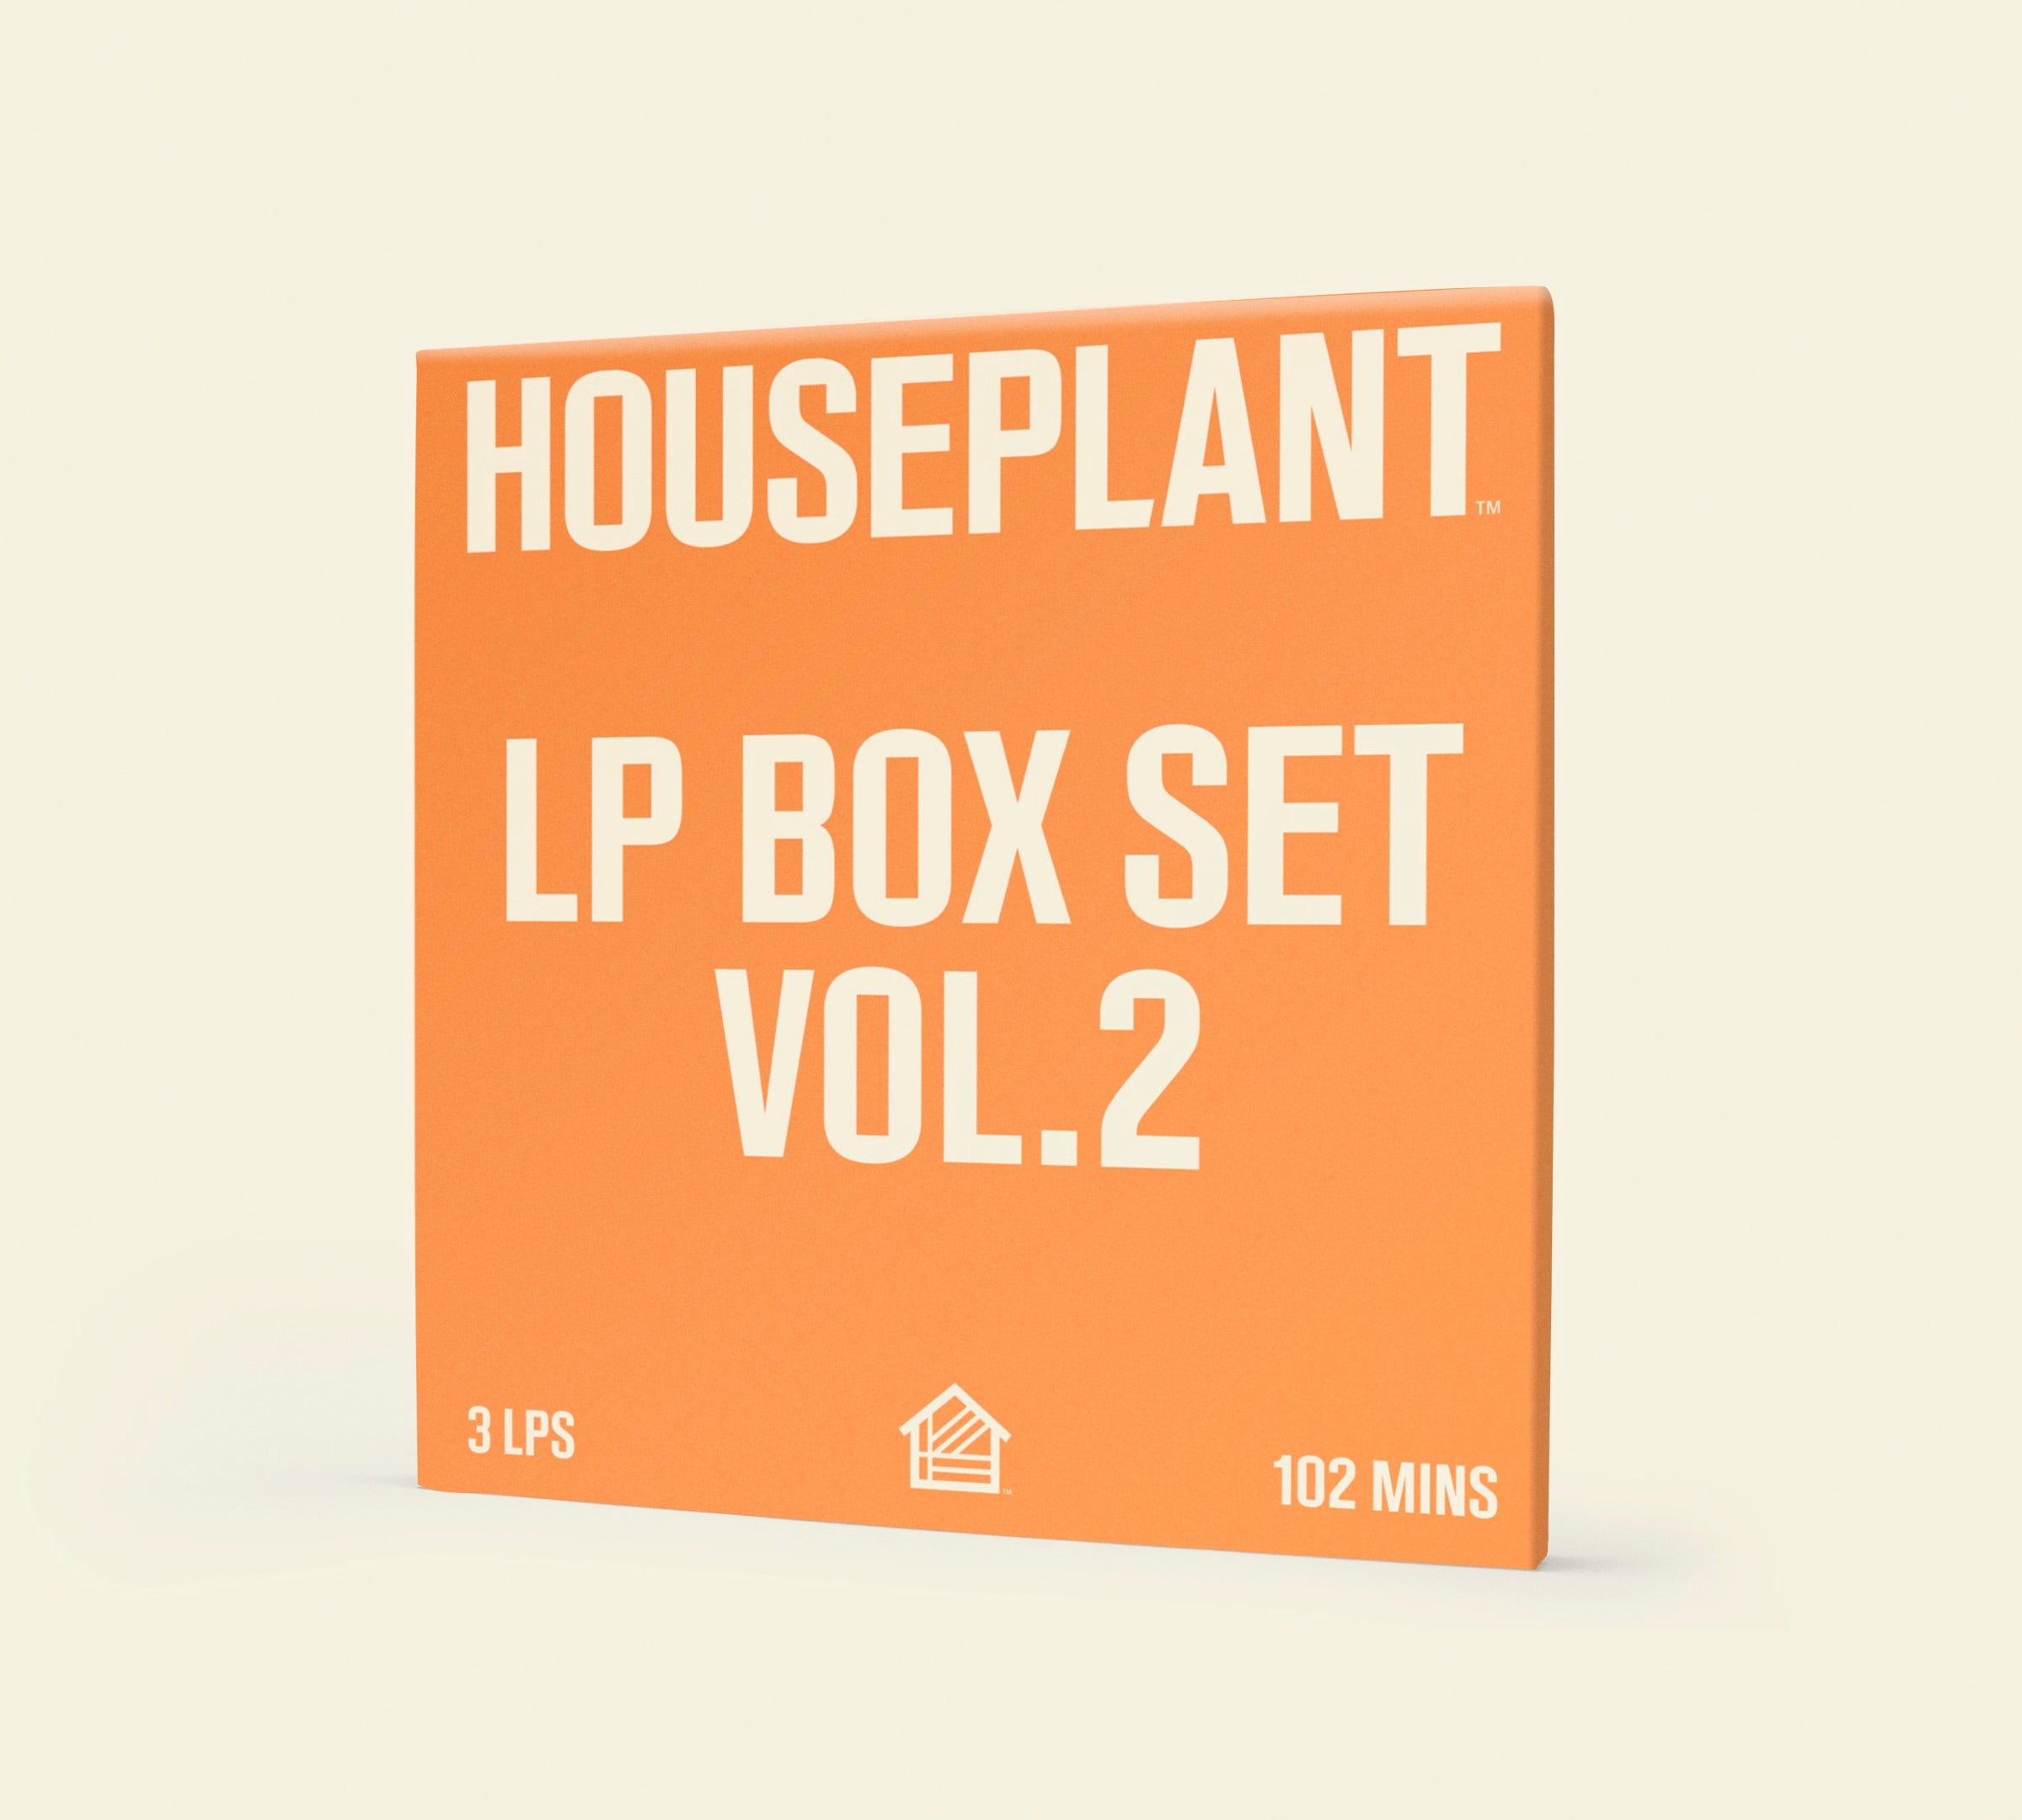 LP Box Set Vol. 2